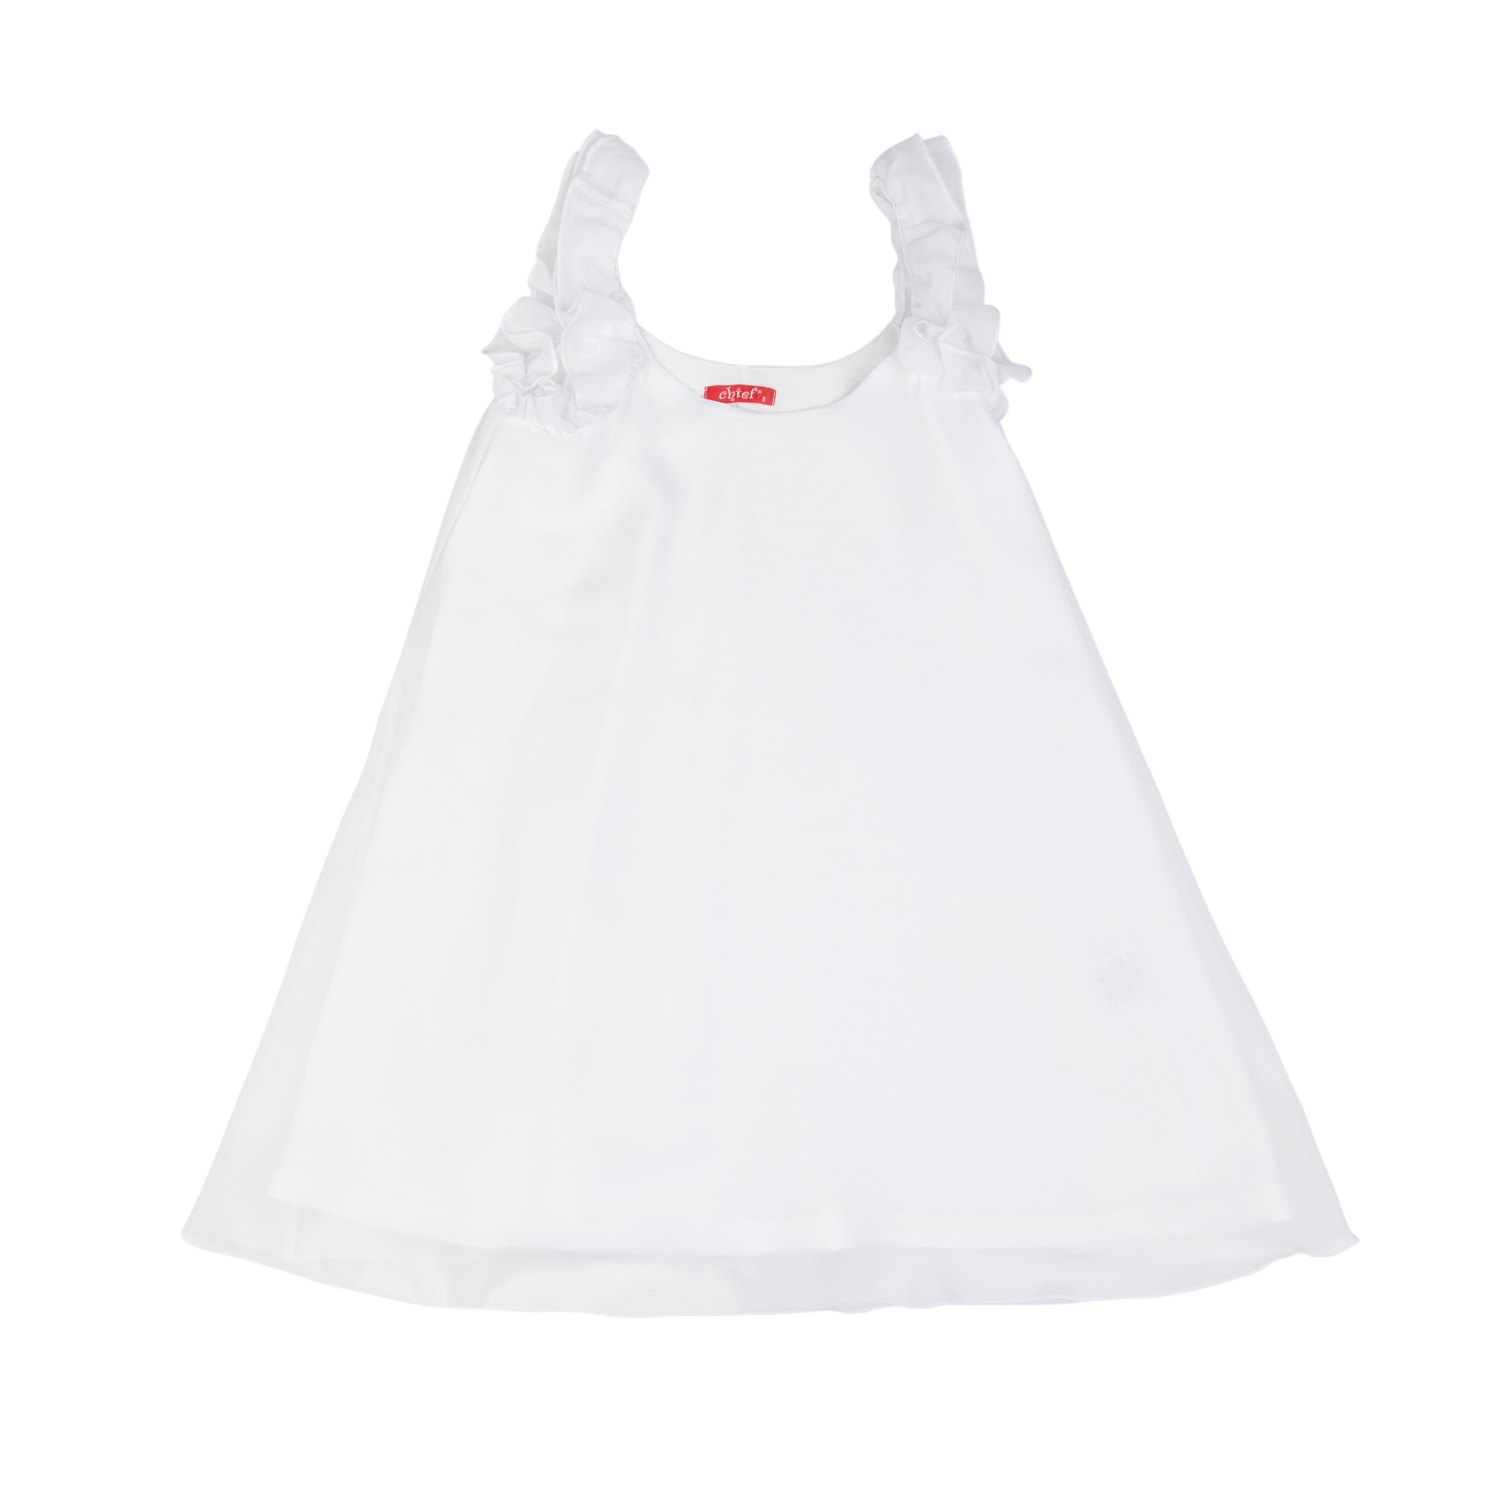 Φόρεμα για κορίτσι καλοκαιρινό σε λευκό χρώμα -31.4003L 10 ετών 77731